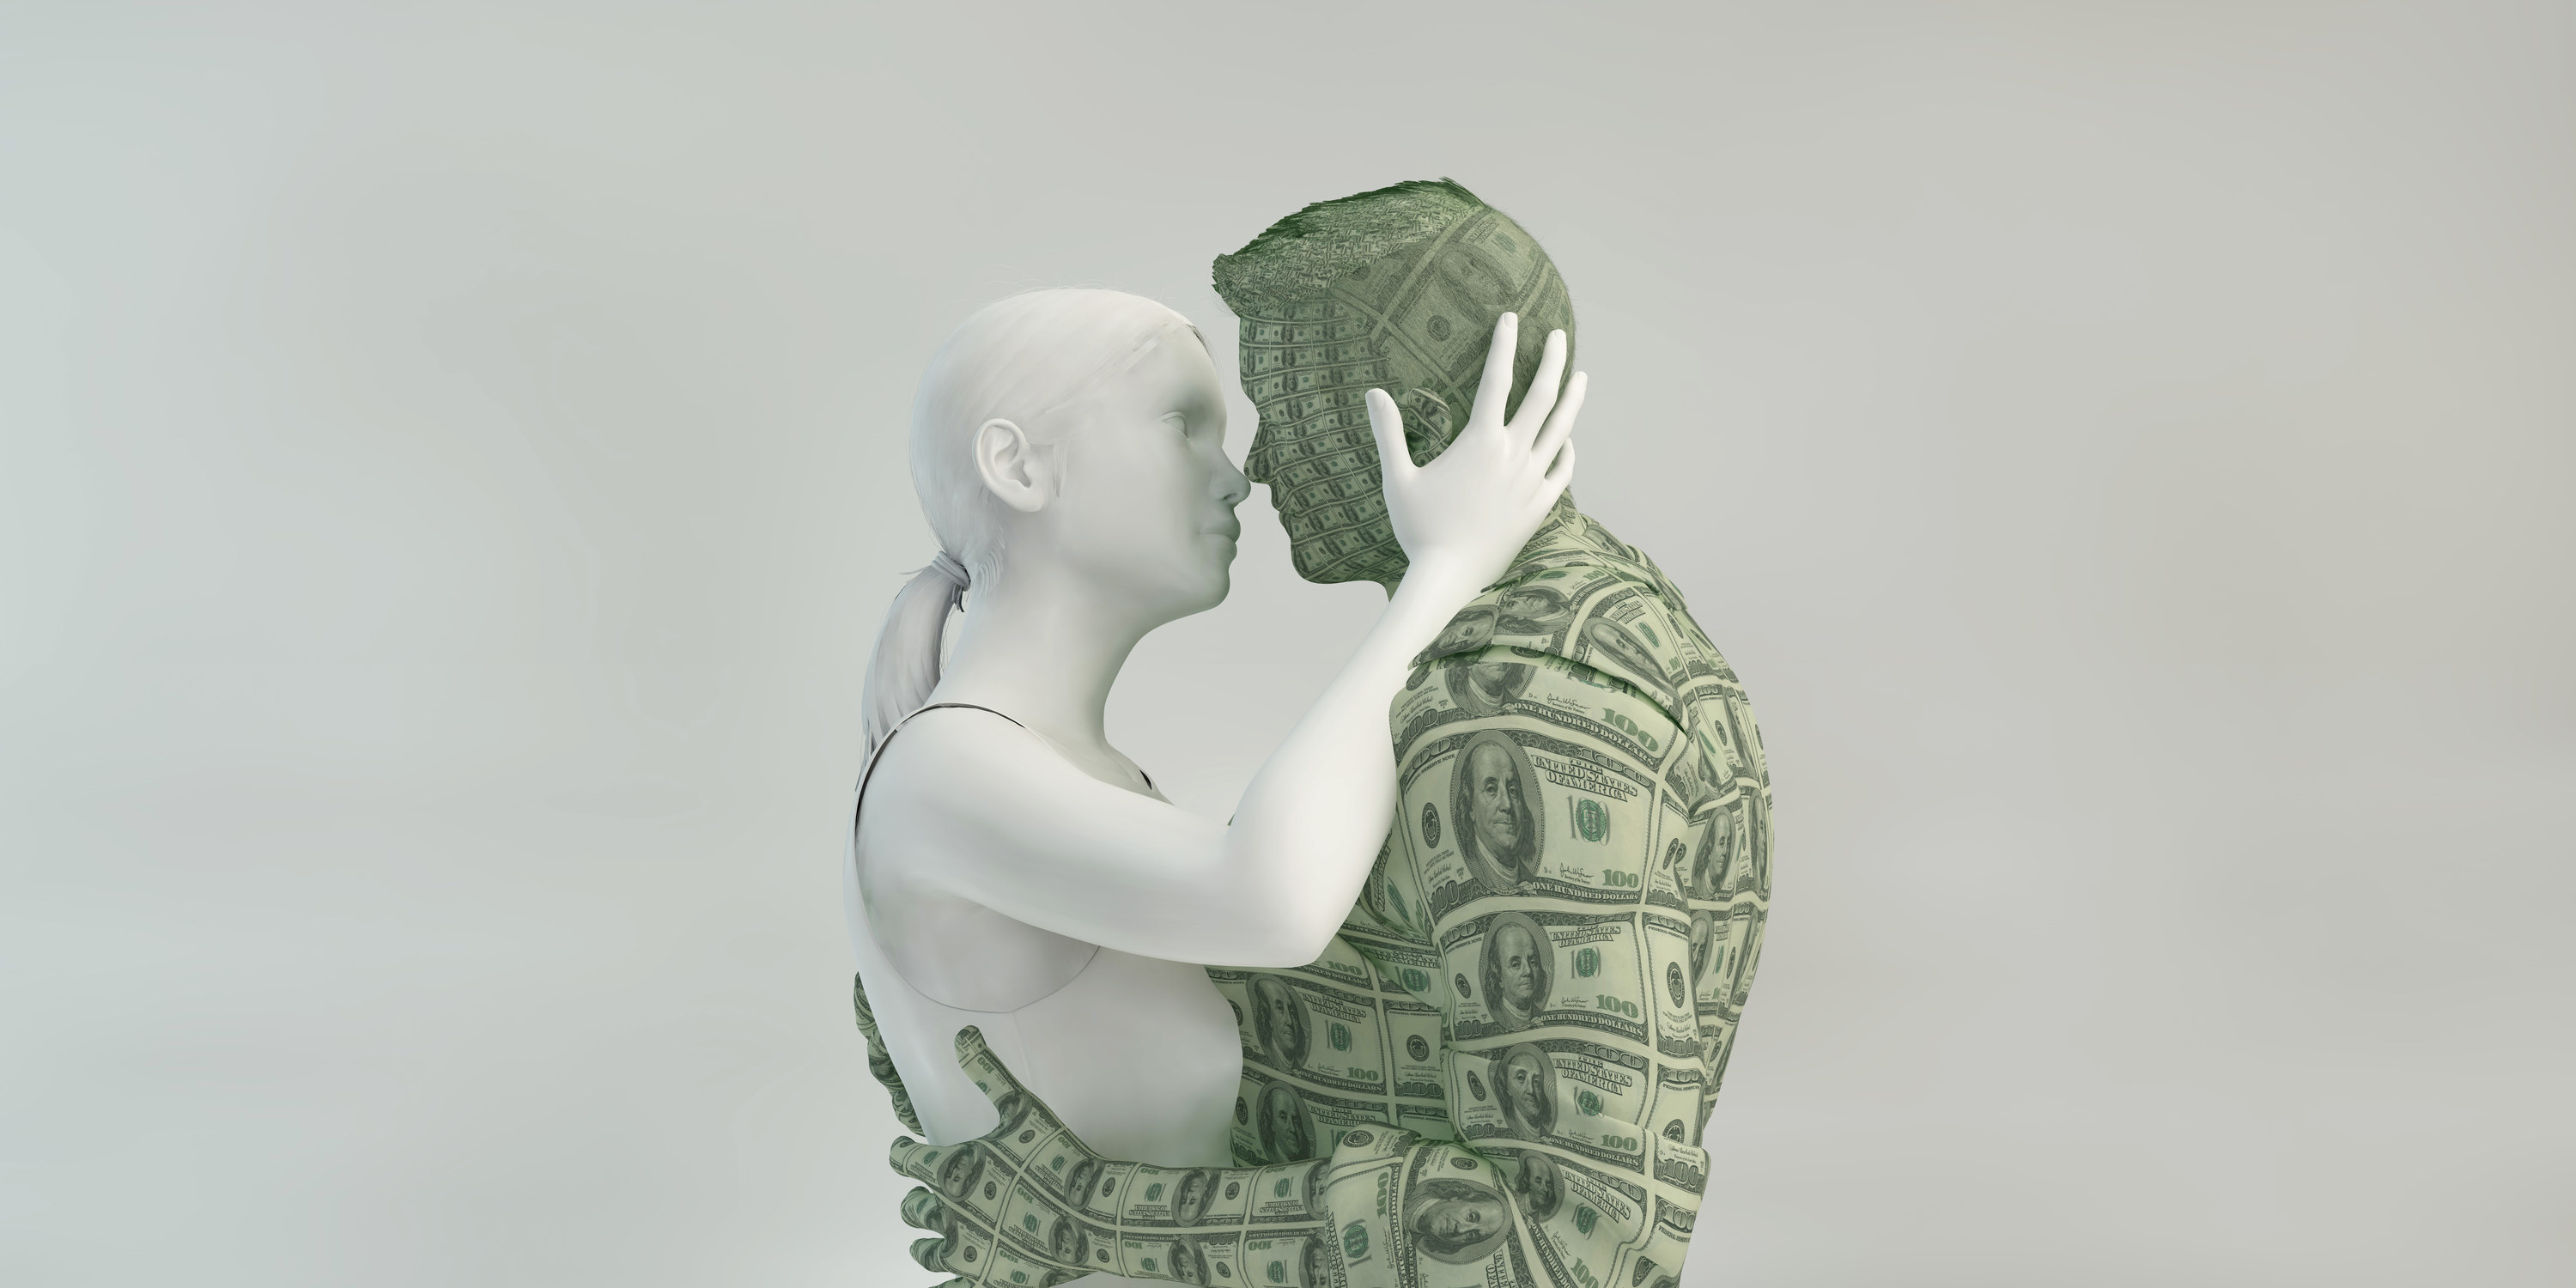 大理石做的是倾身吻女人和一个男人组成的100美元的账单。